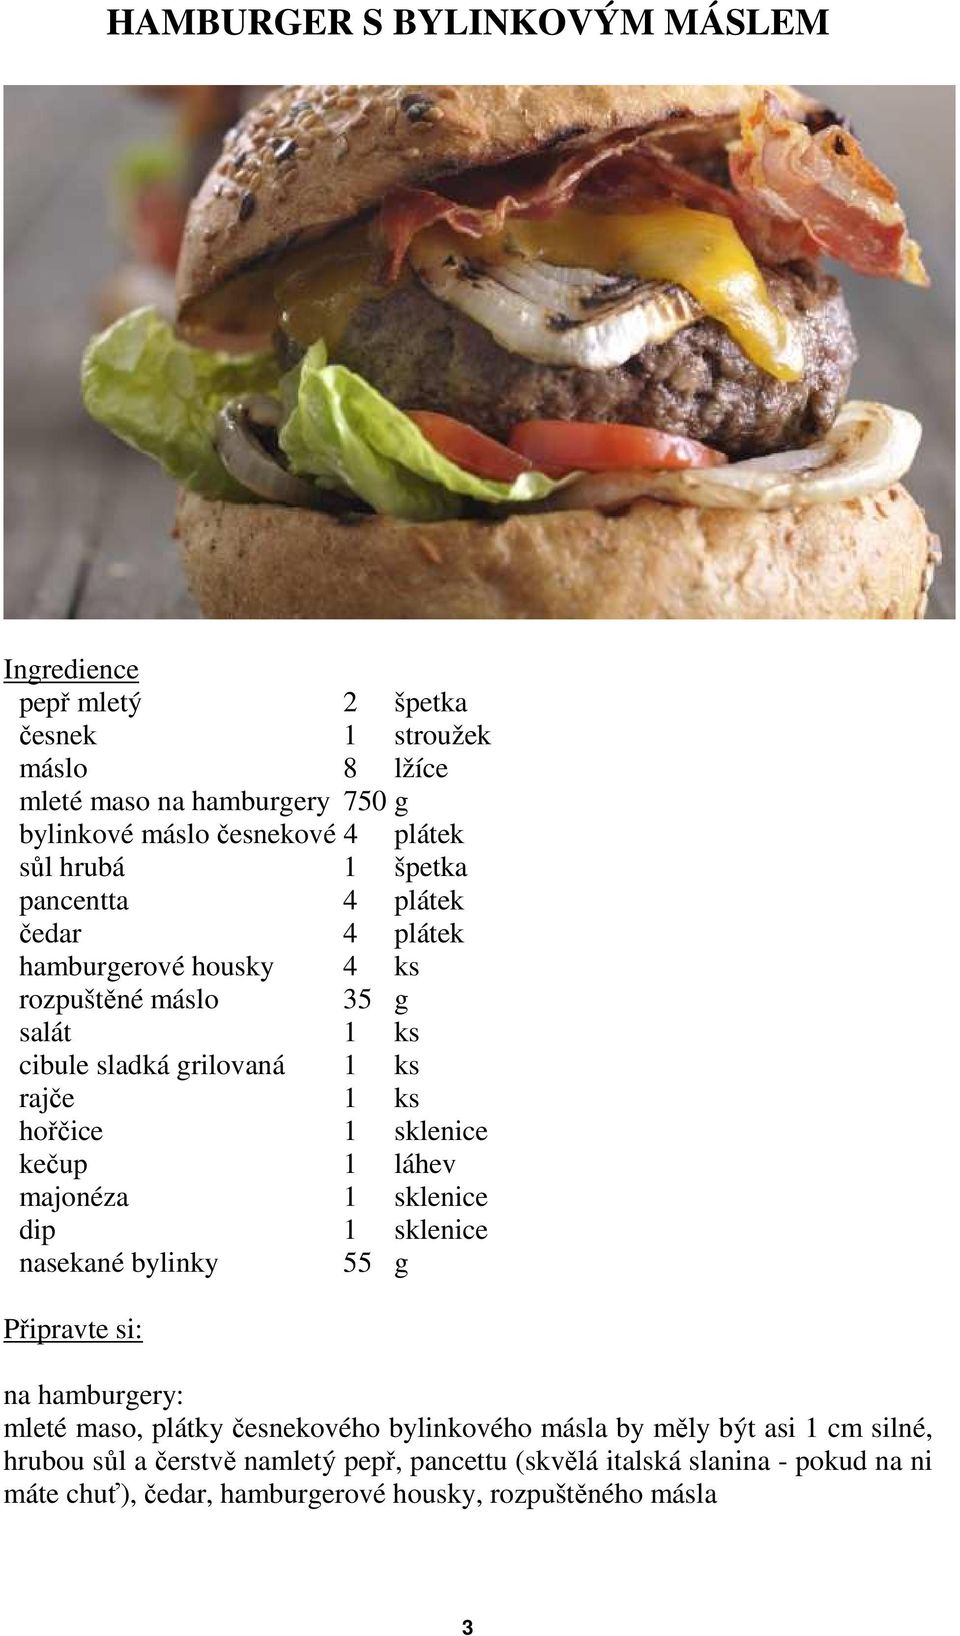 hořčice 1 sklenice kečup 1 láhev majonéza 1 sklenice dip 1 sklenice nasekané bylinky 55 g na hamburgery: mleté maso, plátky česnekového bylinkového másla by